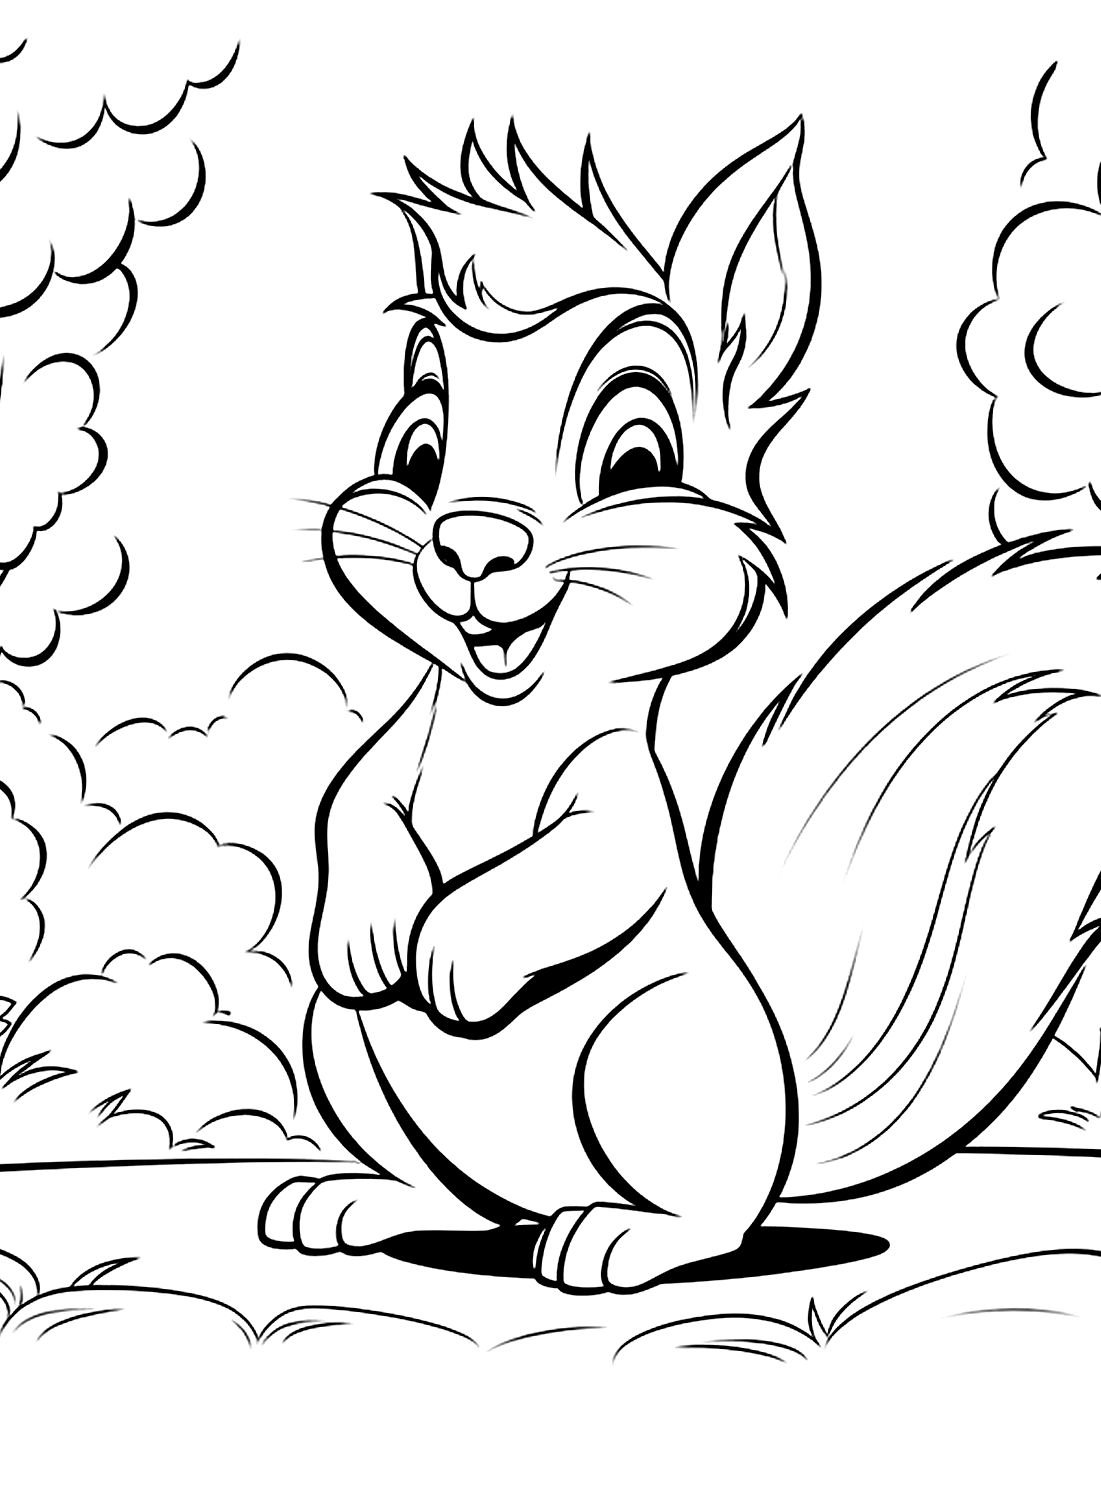 Eichhörnchen-Malvorlage zum Ausdrucken bei Squirrel